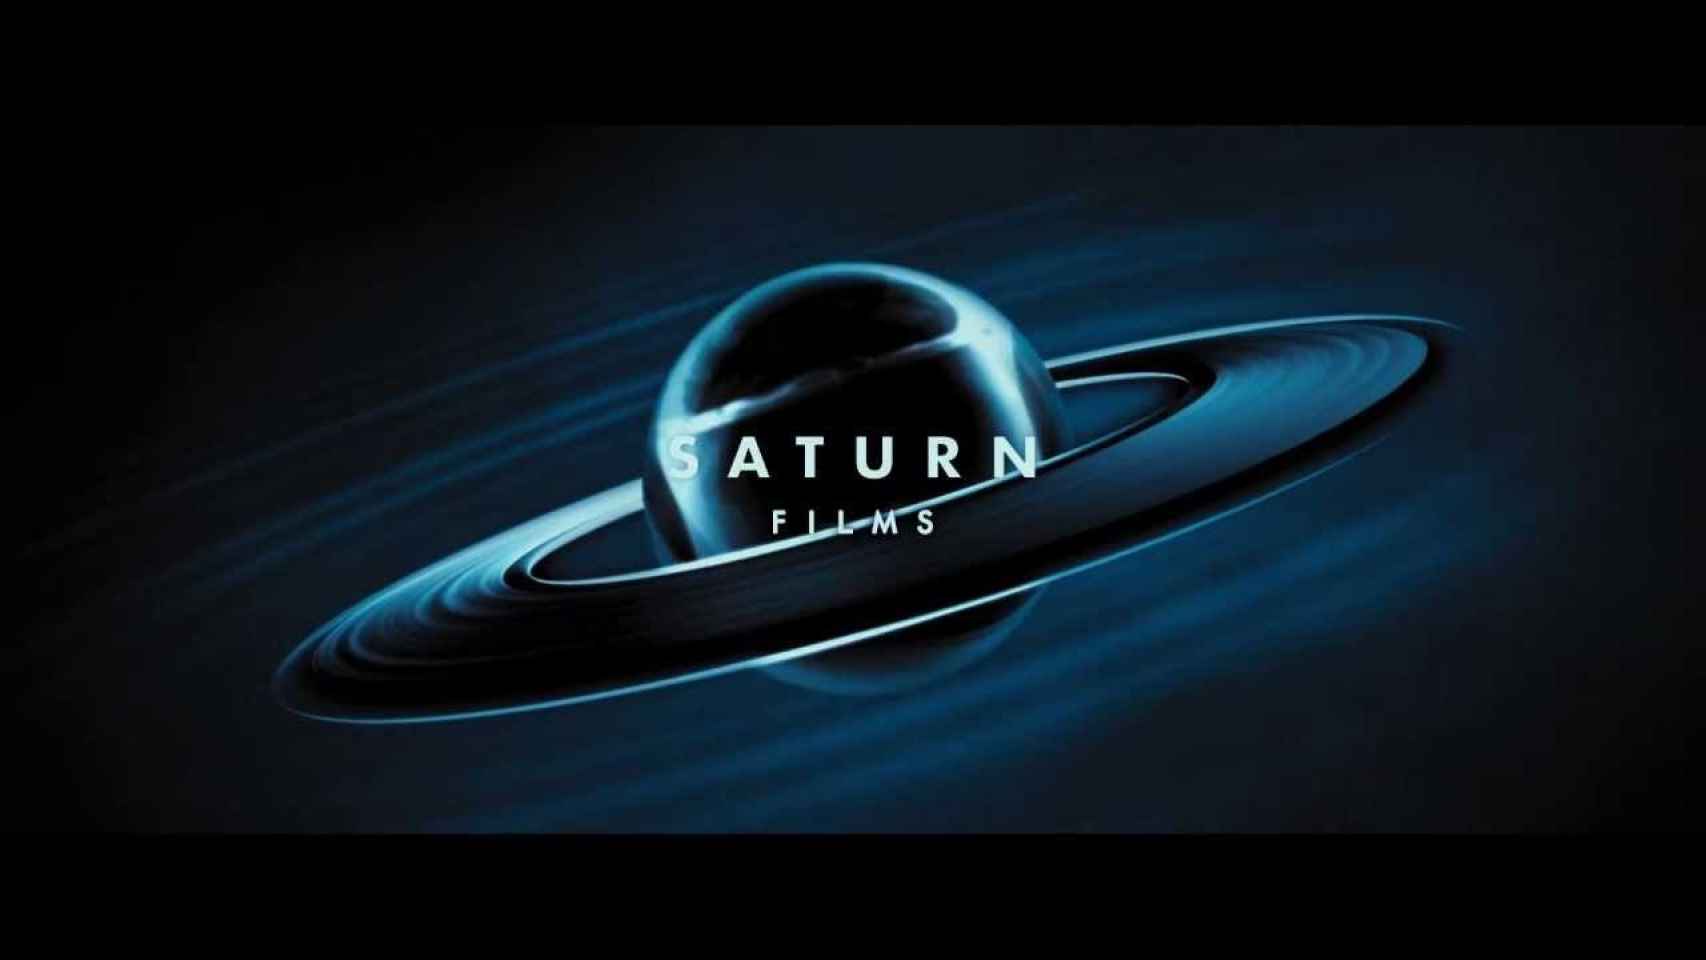 El logo de Saturn Films, la esotérica marca de la productora de Cage